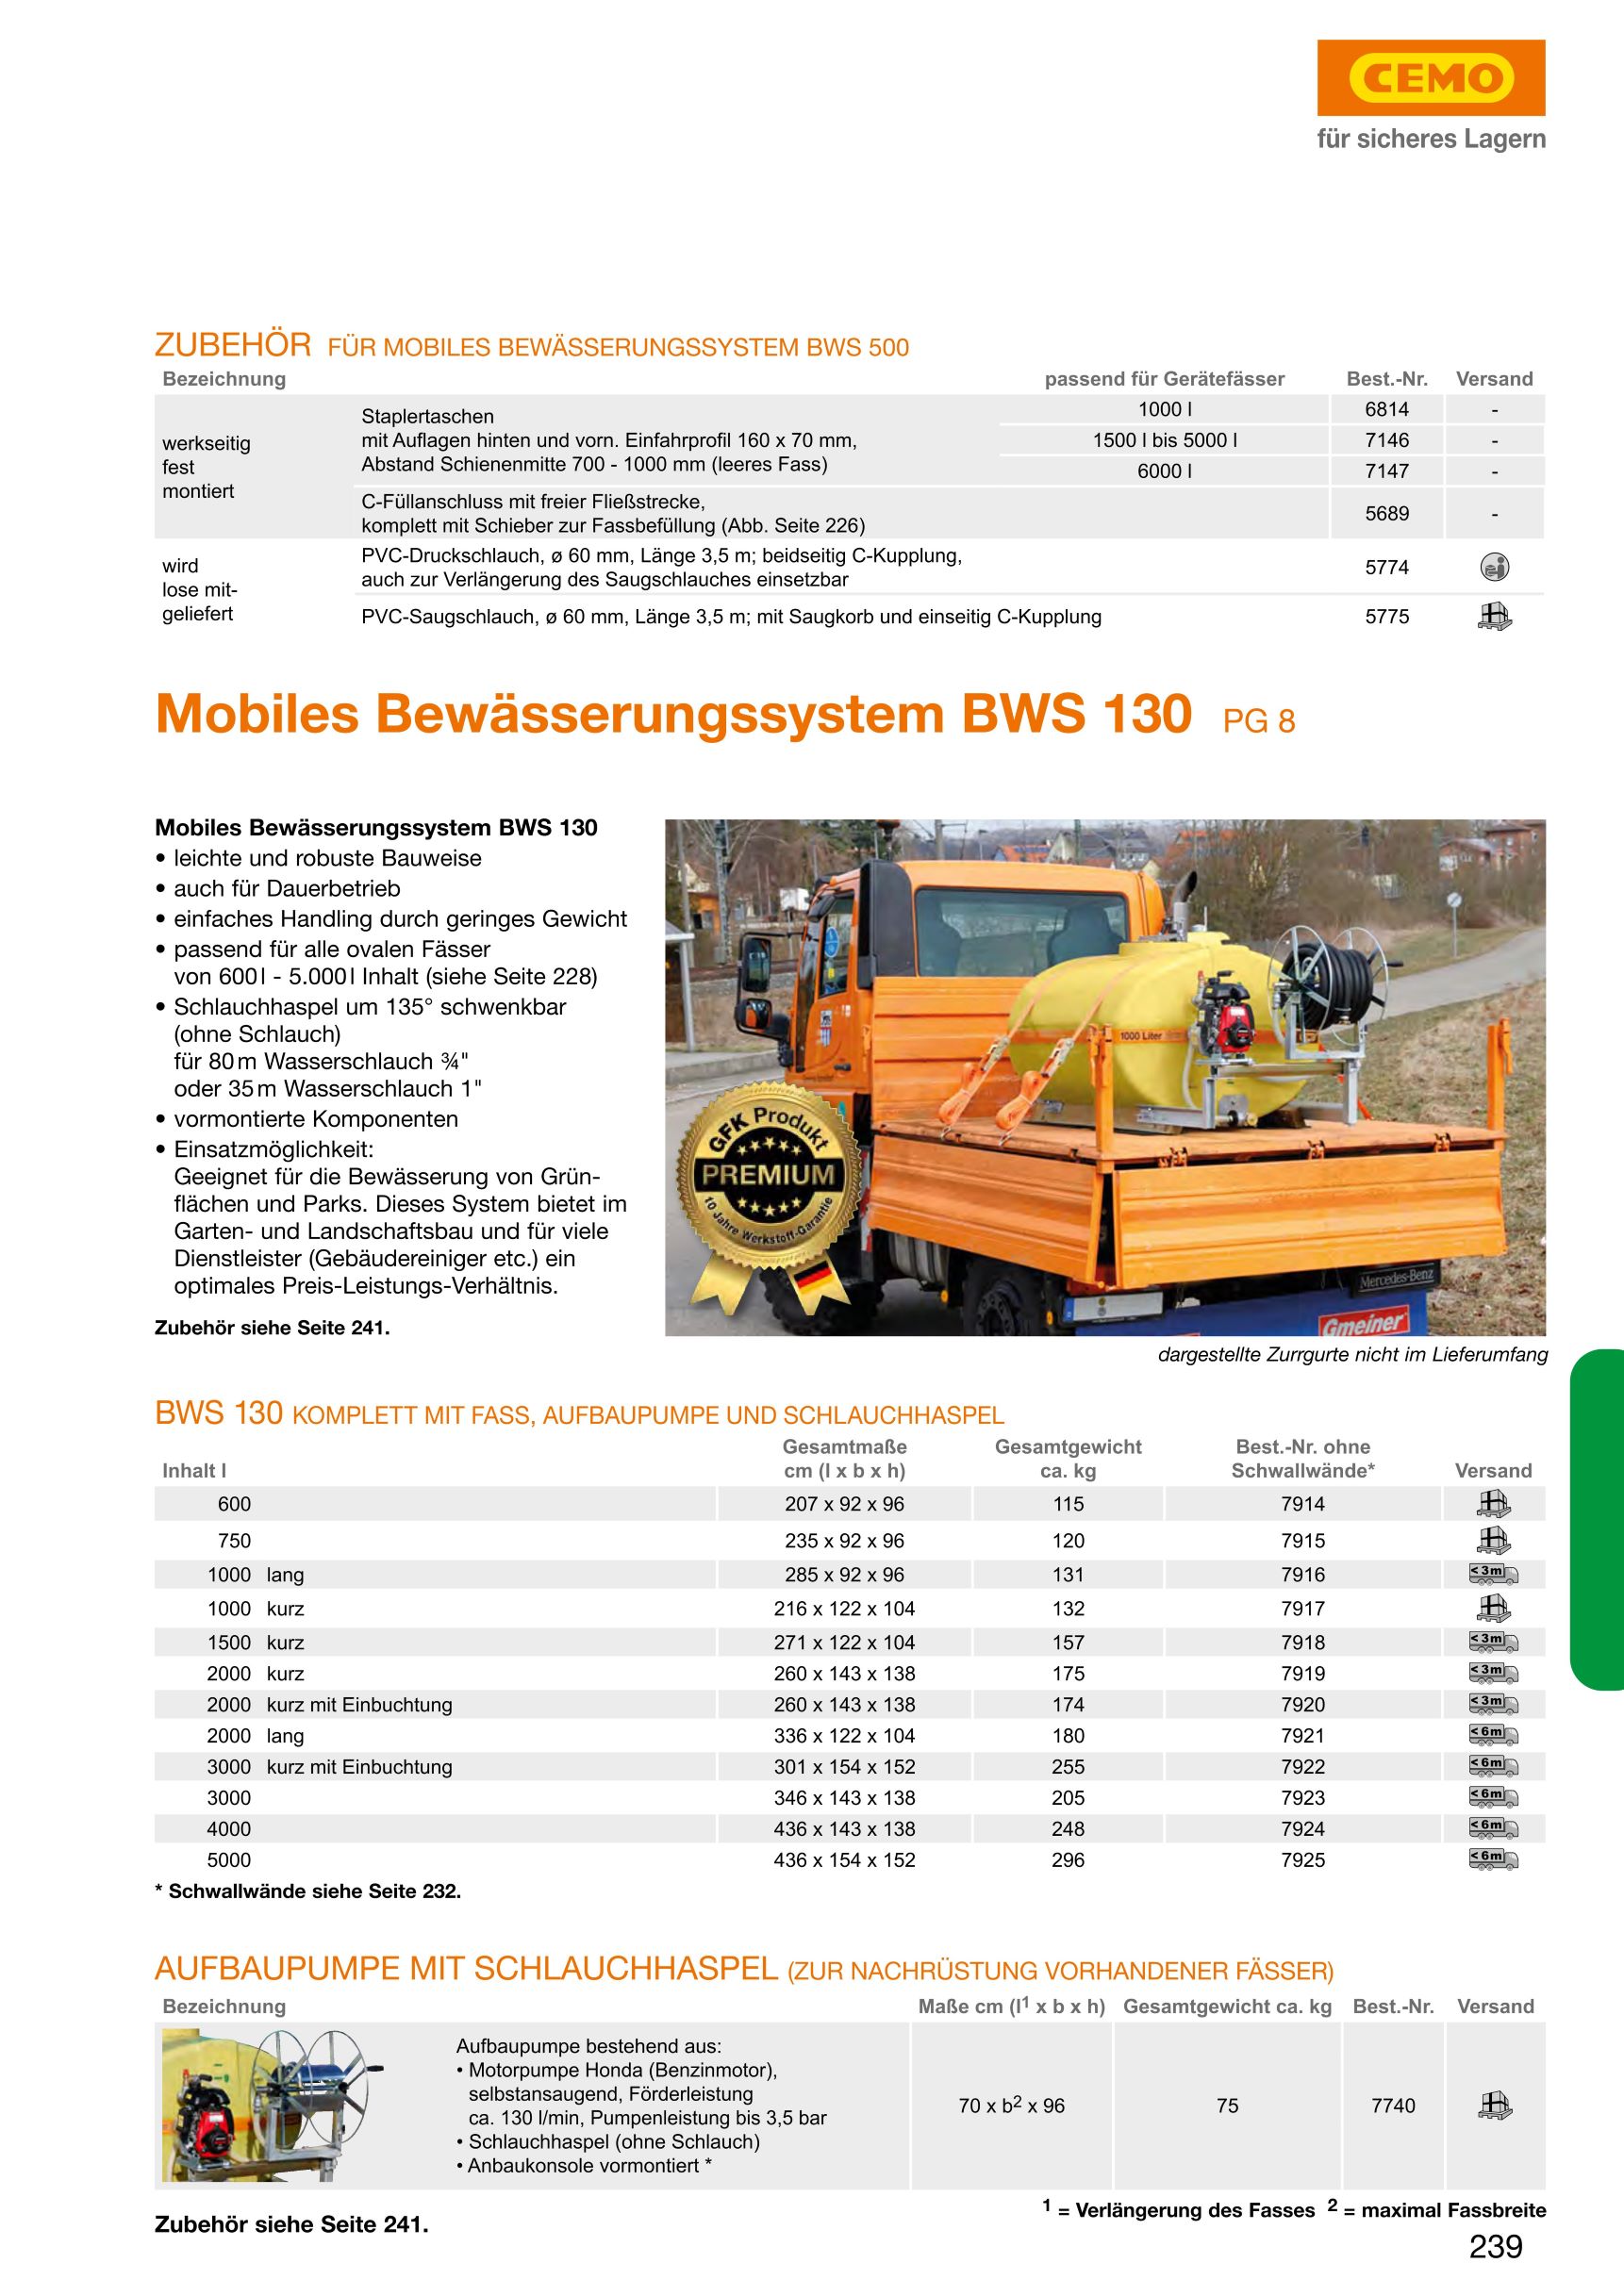 CEMO Mobiles Bewässerungssystem BWS 130, 2000 l kurz mit Einbuchtung, Motorpumpe - 7920